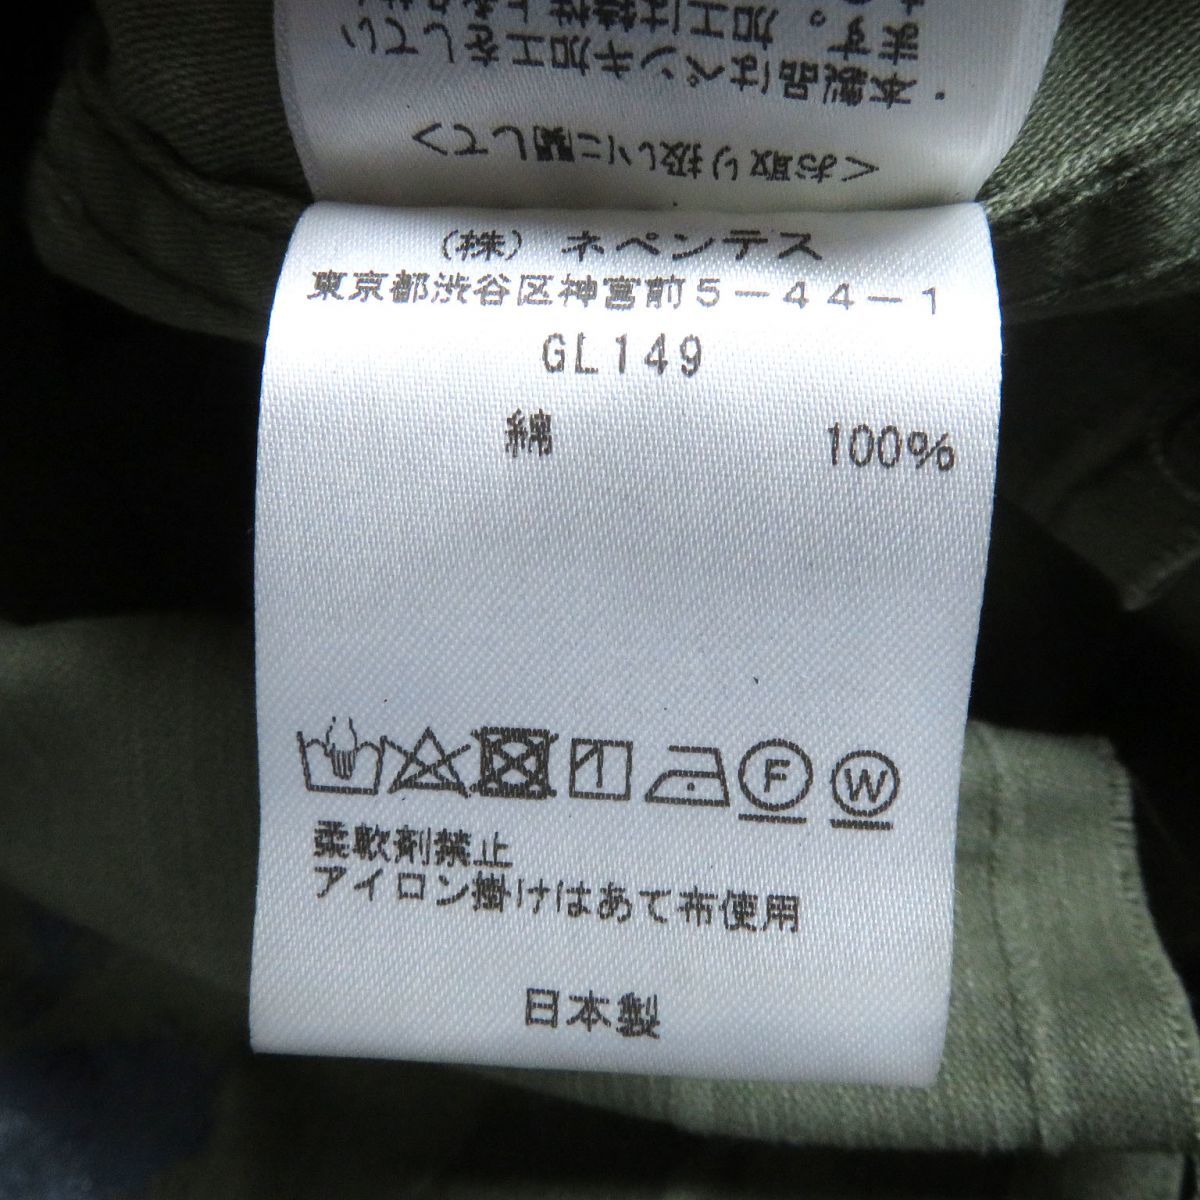  неиспользованный товар  □20SS ... GL149 DN Coverall  краска   обработка   хлопок    военный    крышка  полностью  /CPO пиджак   машина ... XS  сделано в Японии   подлинный товар  